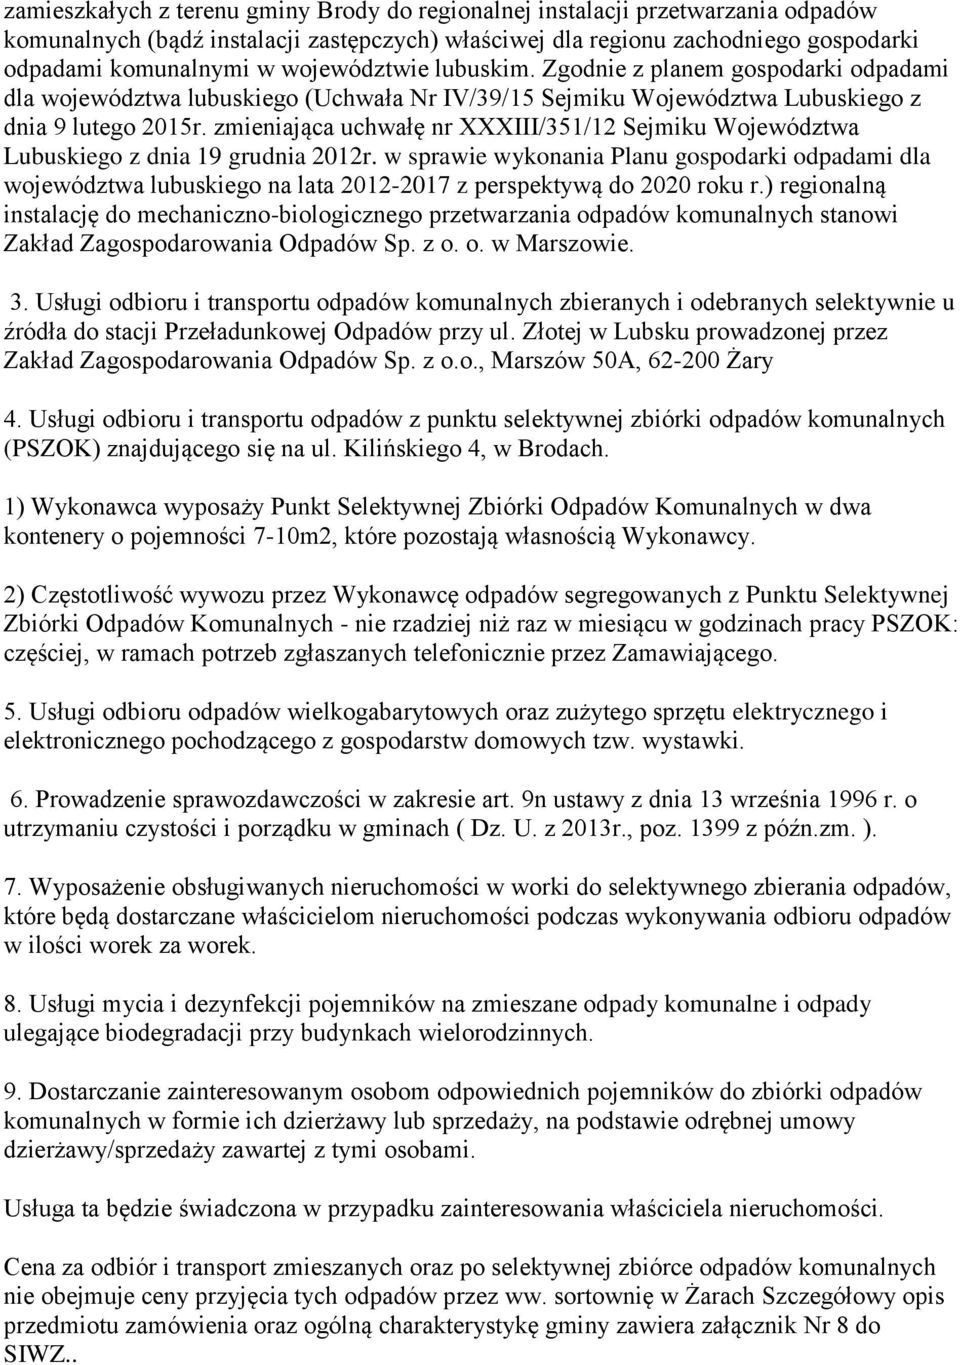 zmieniająca uchwałę nr XXXIII/351/12 Sejmiku Wjewództwa Lubuskieg z dnia 19 grudnia 2012r.